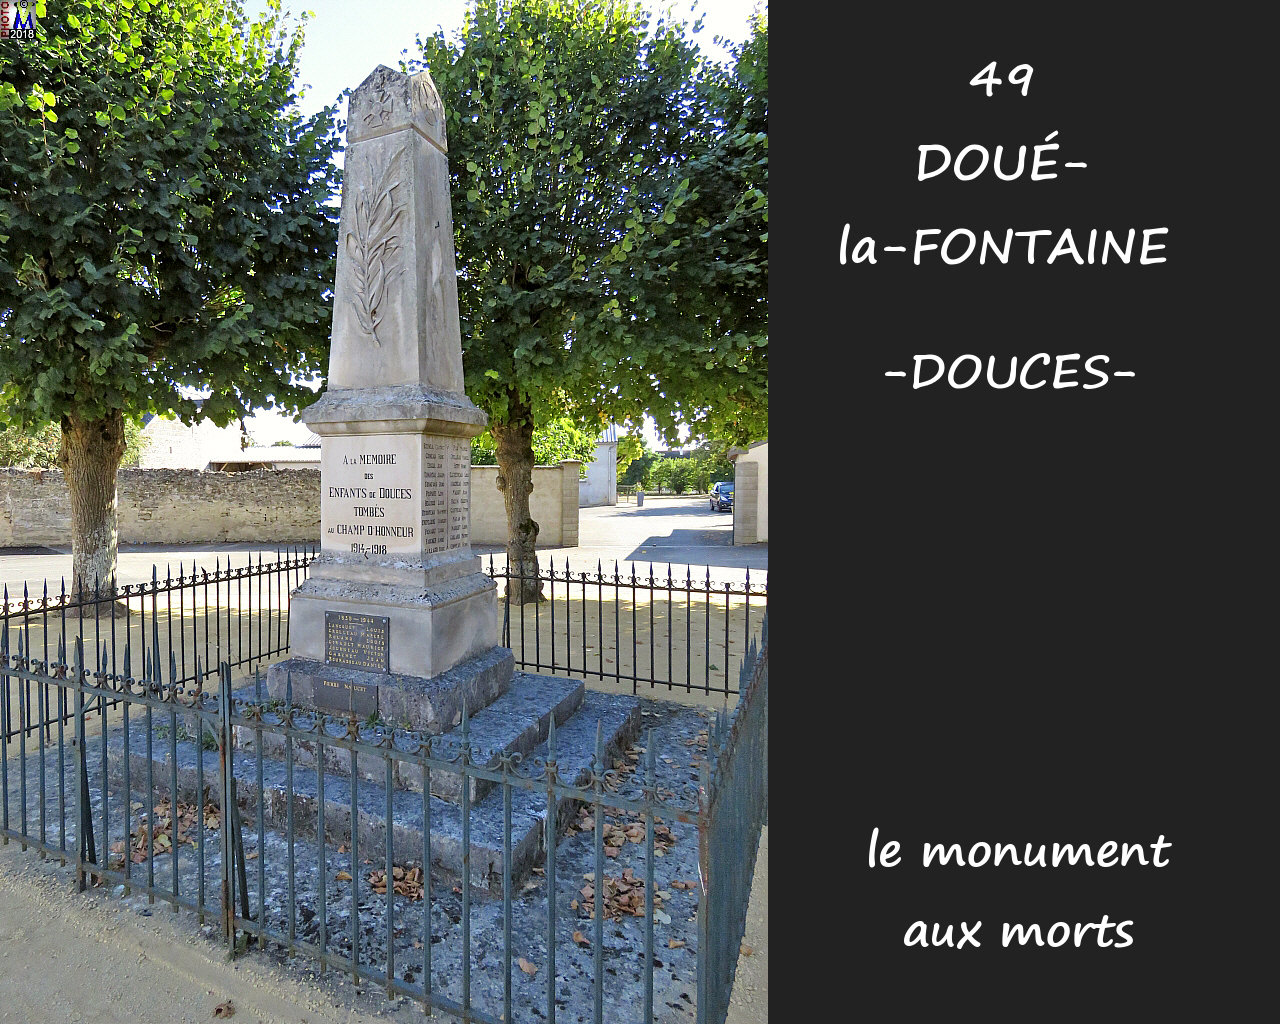 49DOUE-FONTAINEzDOUCES_morts_1000.jpg